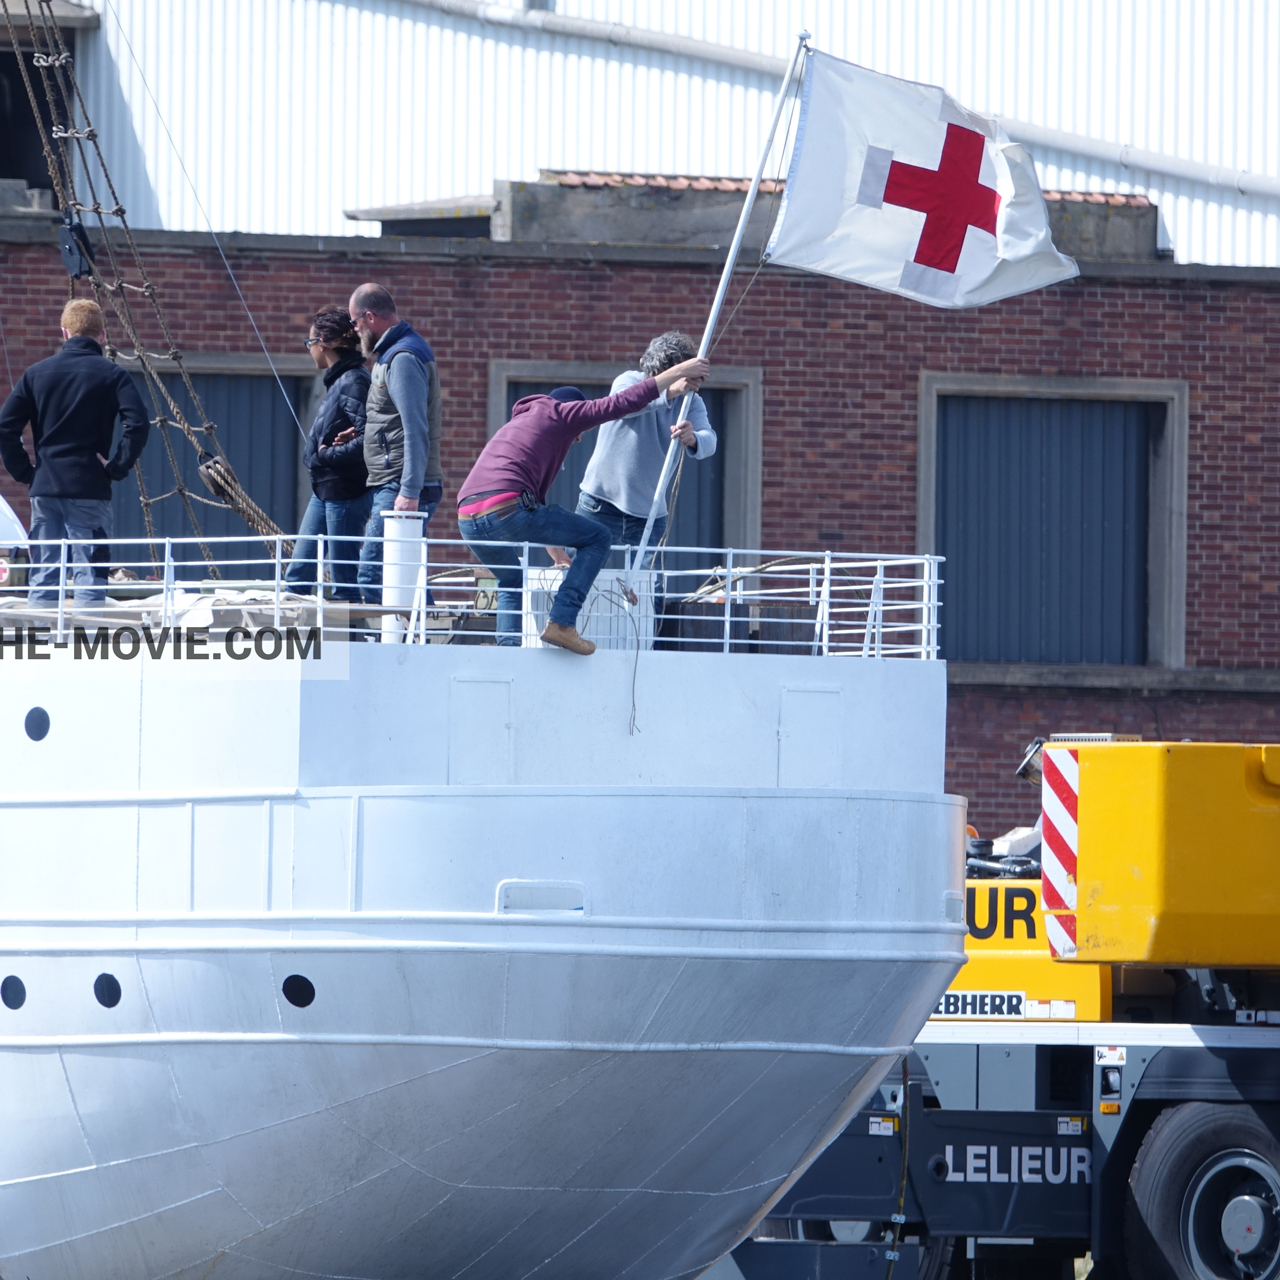 Fotos con accesorios, M/S Rogaland,  durante el rodaje de la película Dunkerque de Nolan